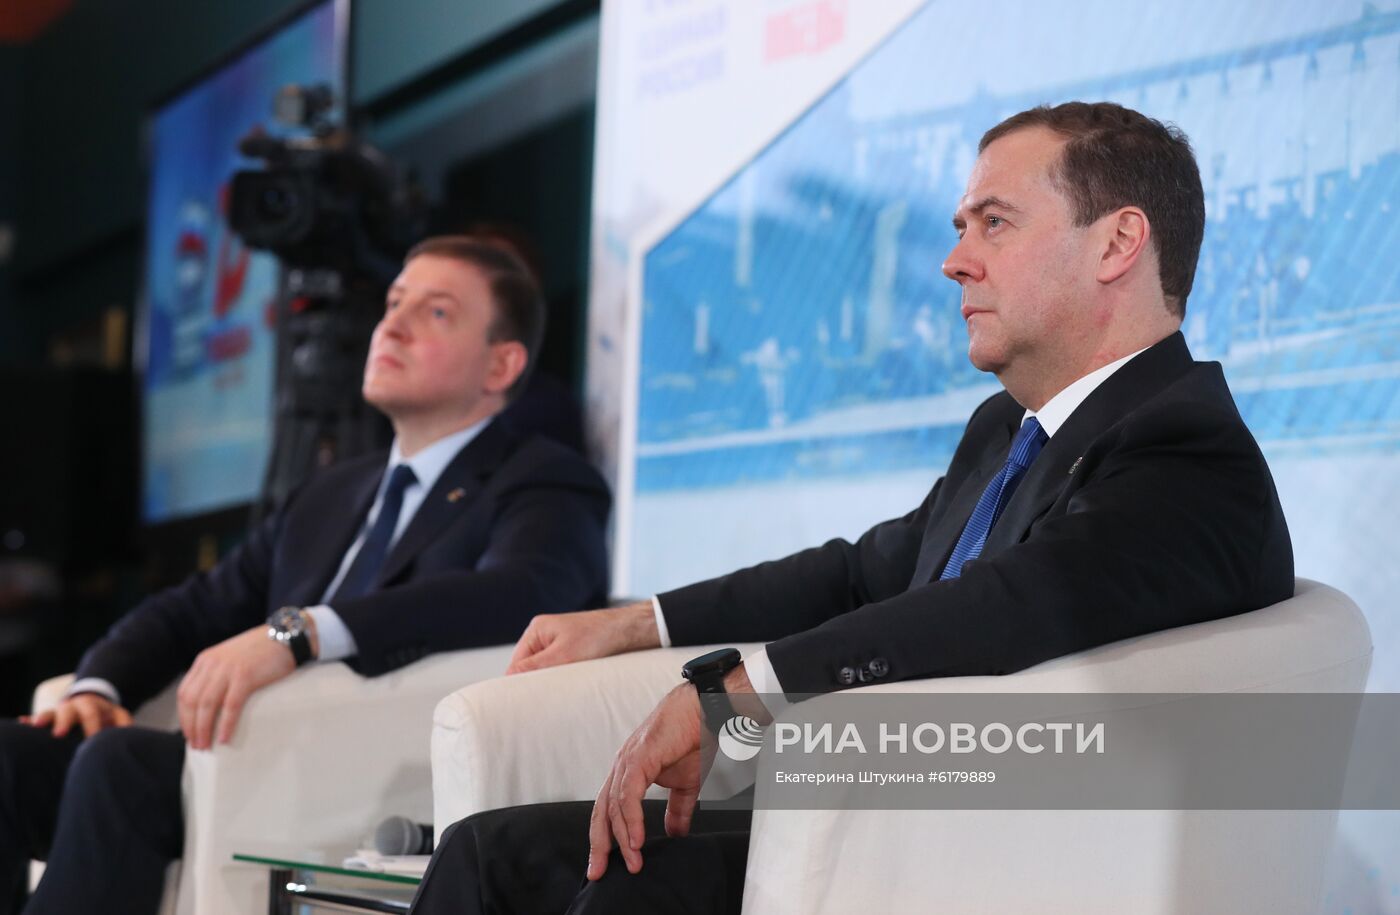 Председатель партии "Единая Россия" Д. Медведев провел встречу с волонтёрами патриотических движений